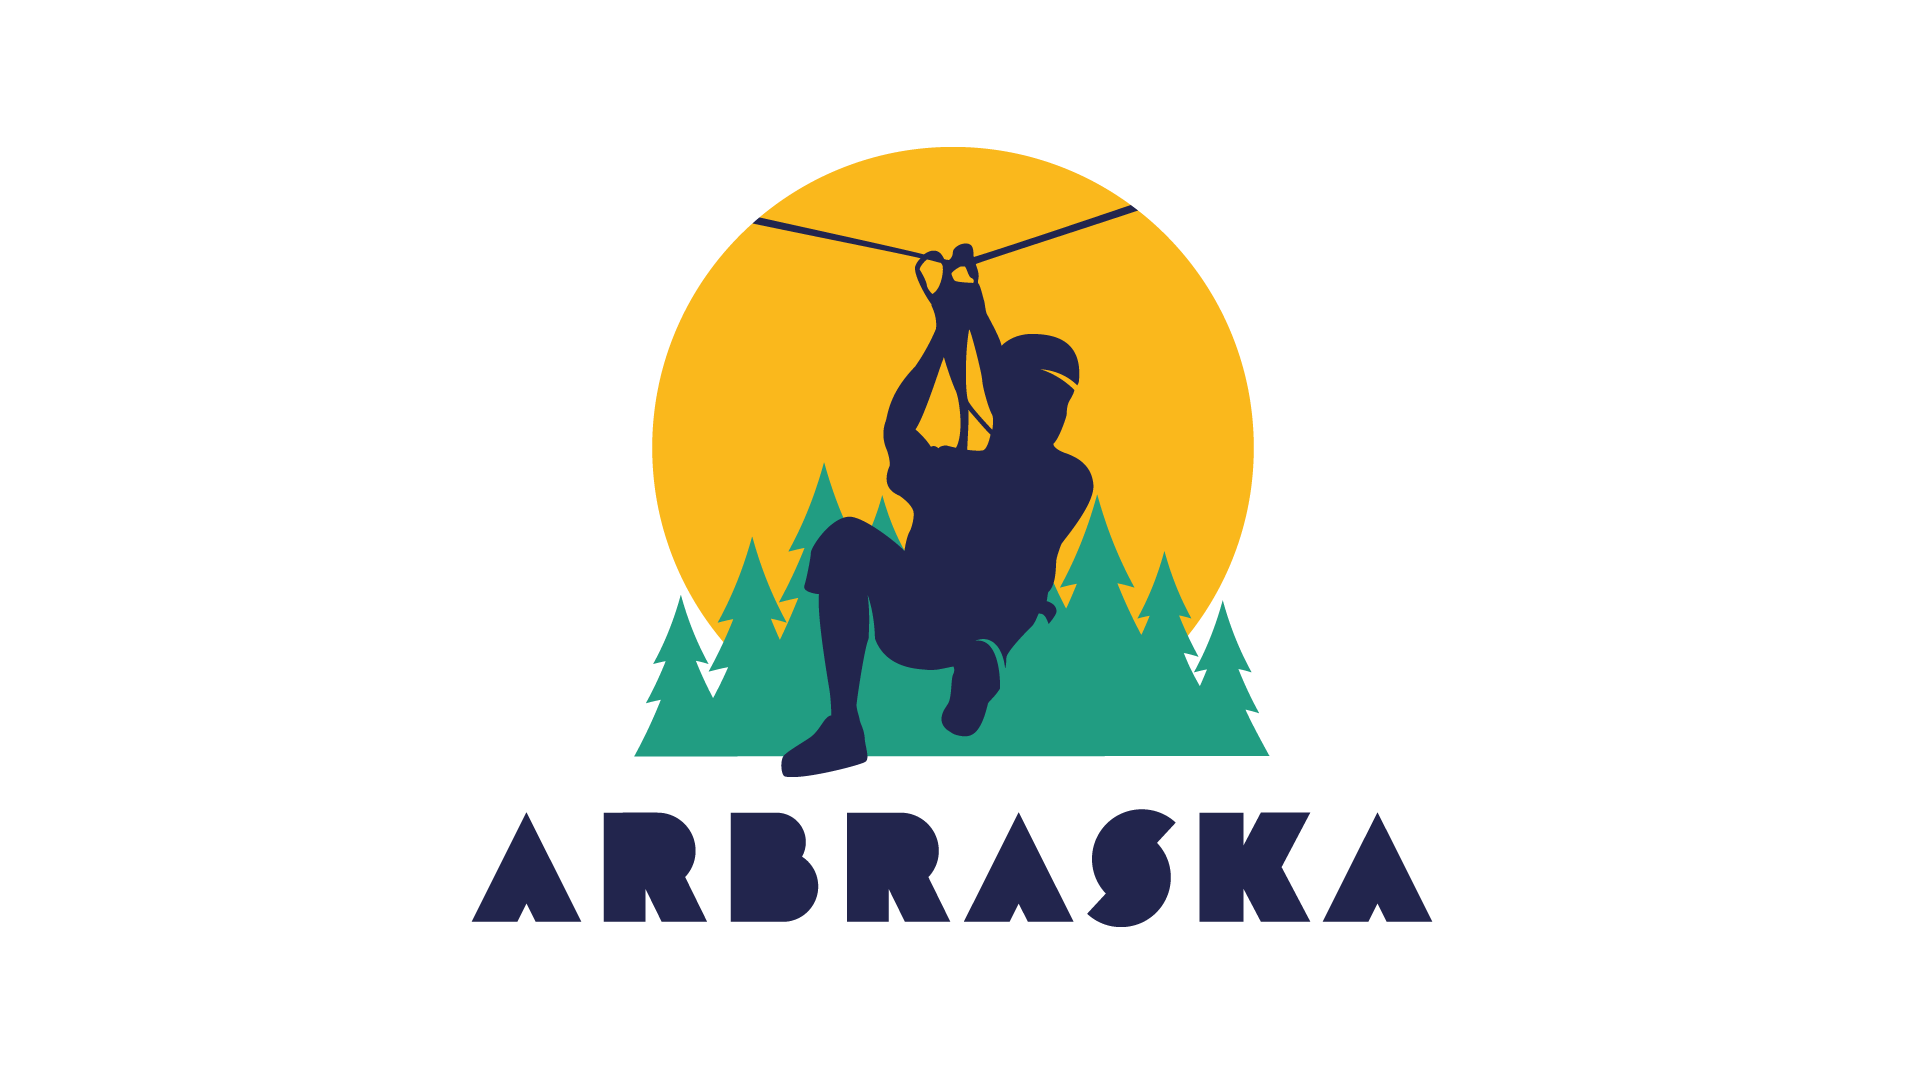 Logo_Arbraska.png